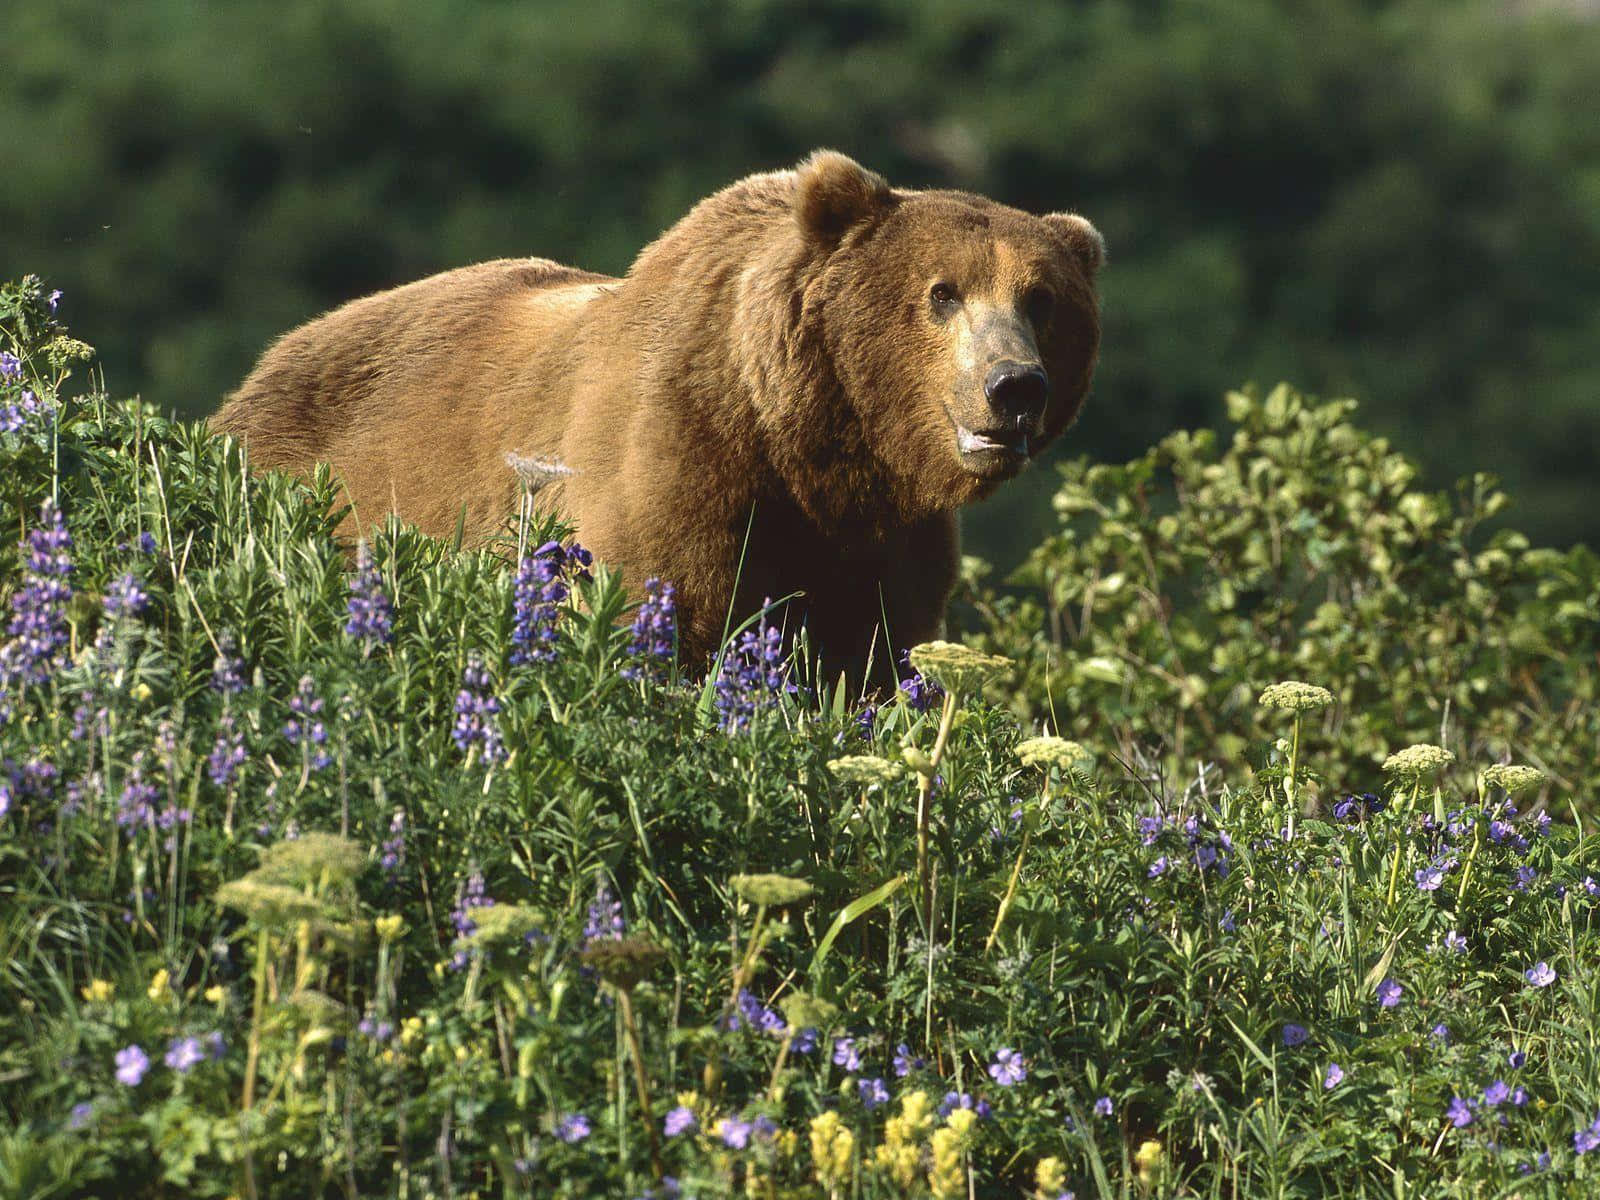 Imagemimpressionante De Um Grande Urso, Posando Majestosamente Em Um Cenário Panorâmico.